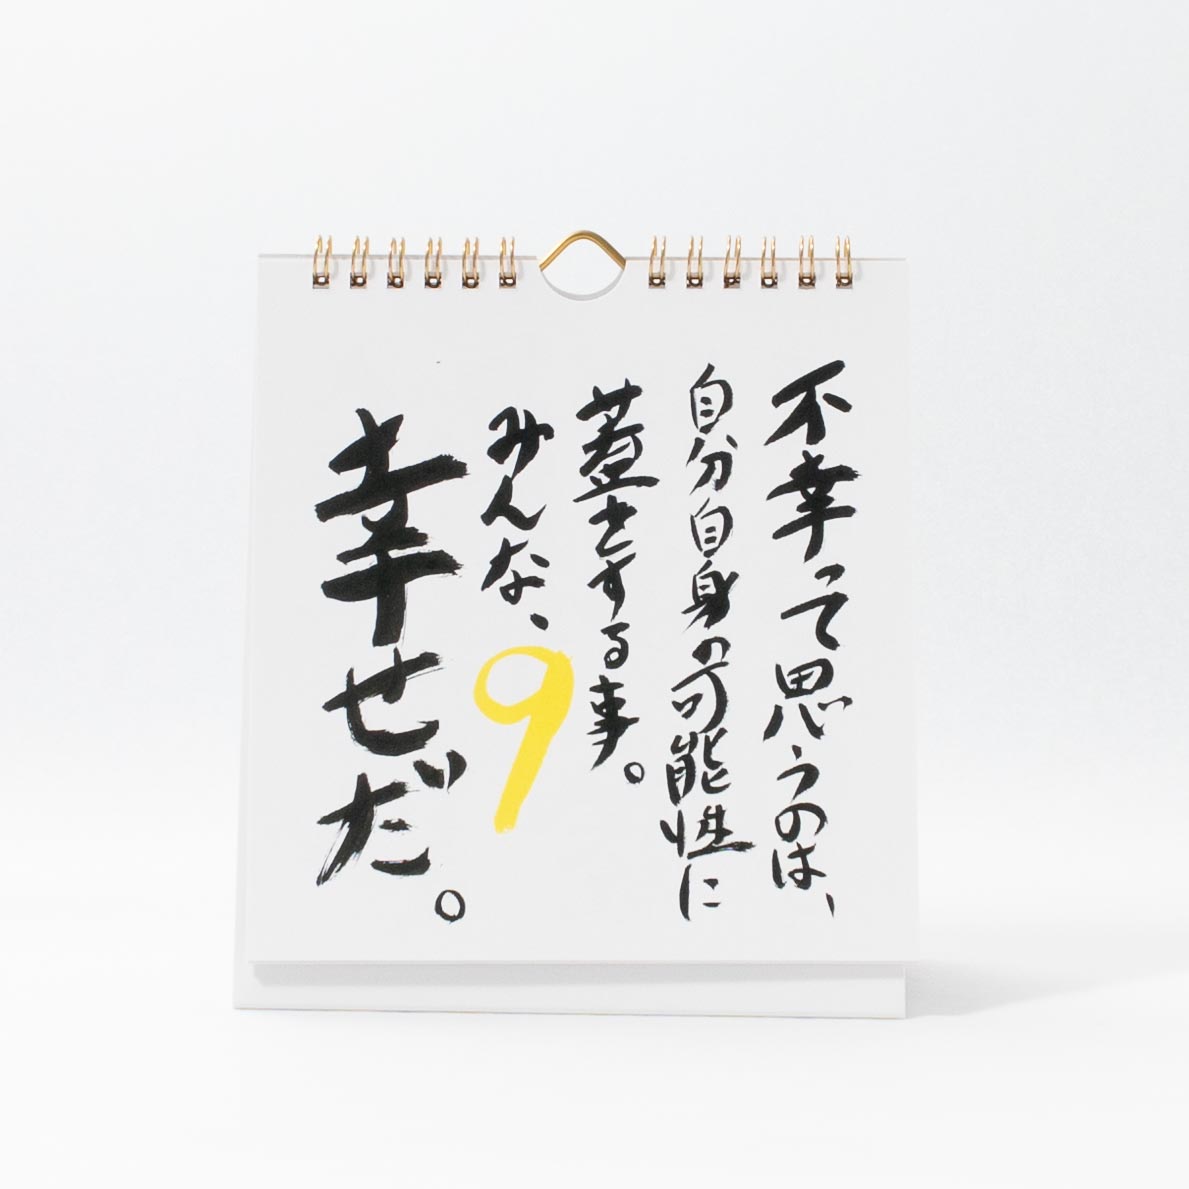 「小竹  道也 様」製作のオリジナルカレンダー ギャラリー写真1